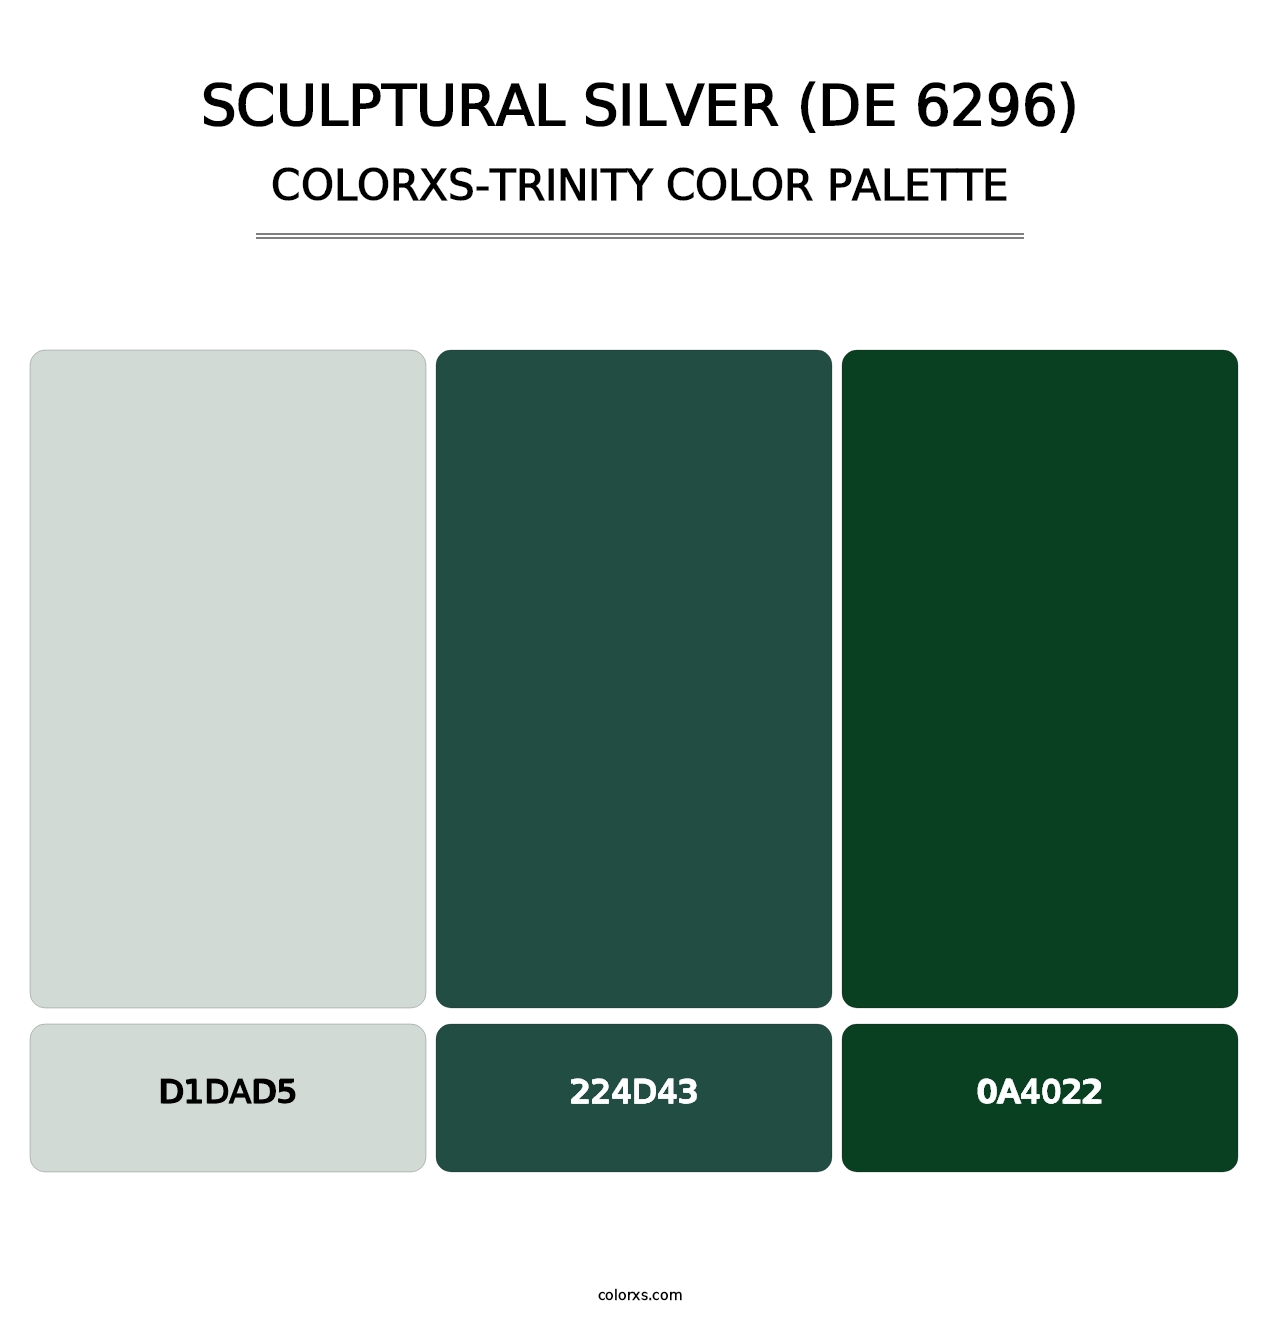 Sculptural Silver (DE 6296) - Colorxs Trinity Palette